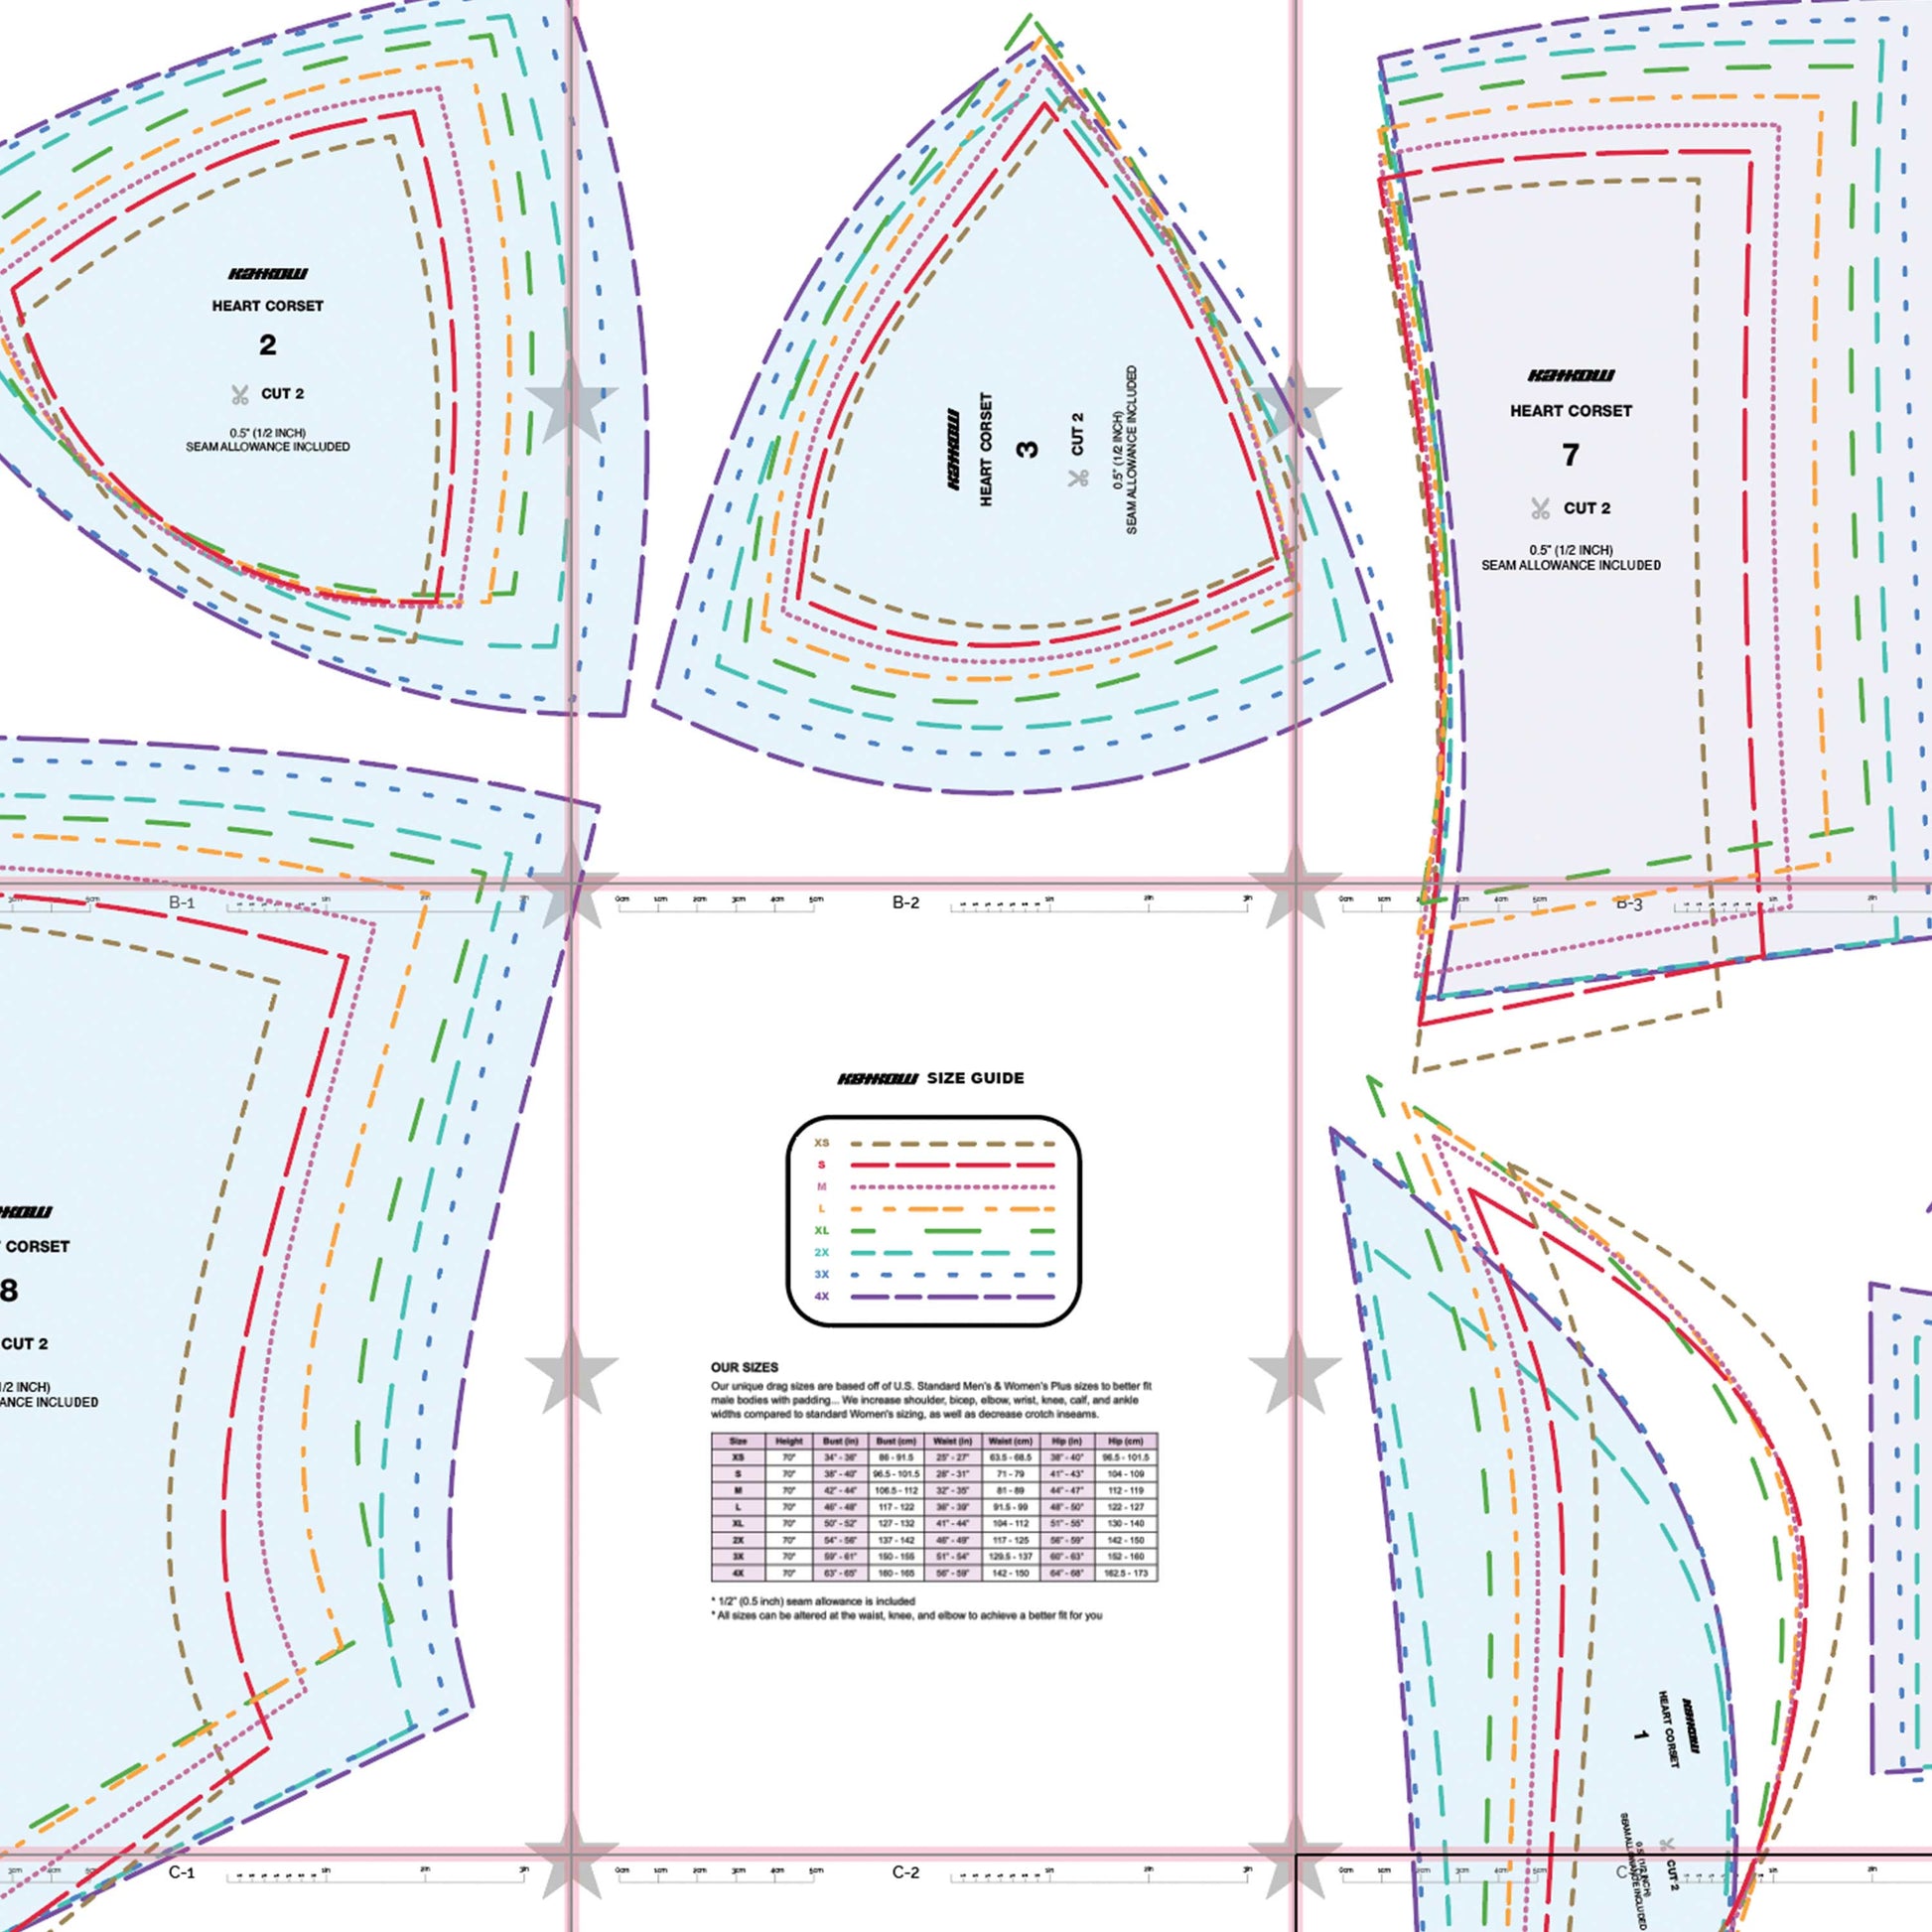 https://www.katkow.net/cdn/shop/products/katkow-heart-corset-sewing-pattern-pattern.jpg?v=1675483558&width=1946